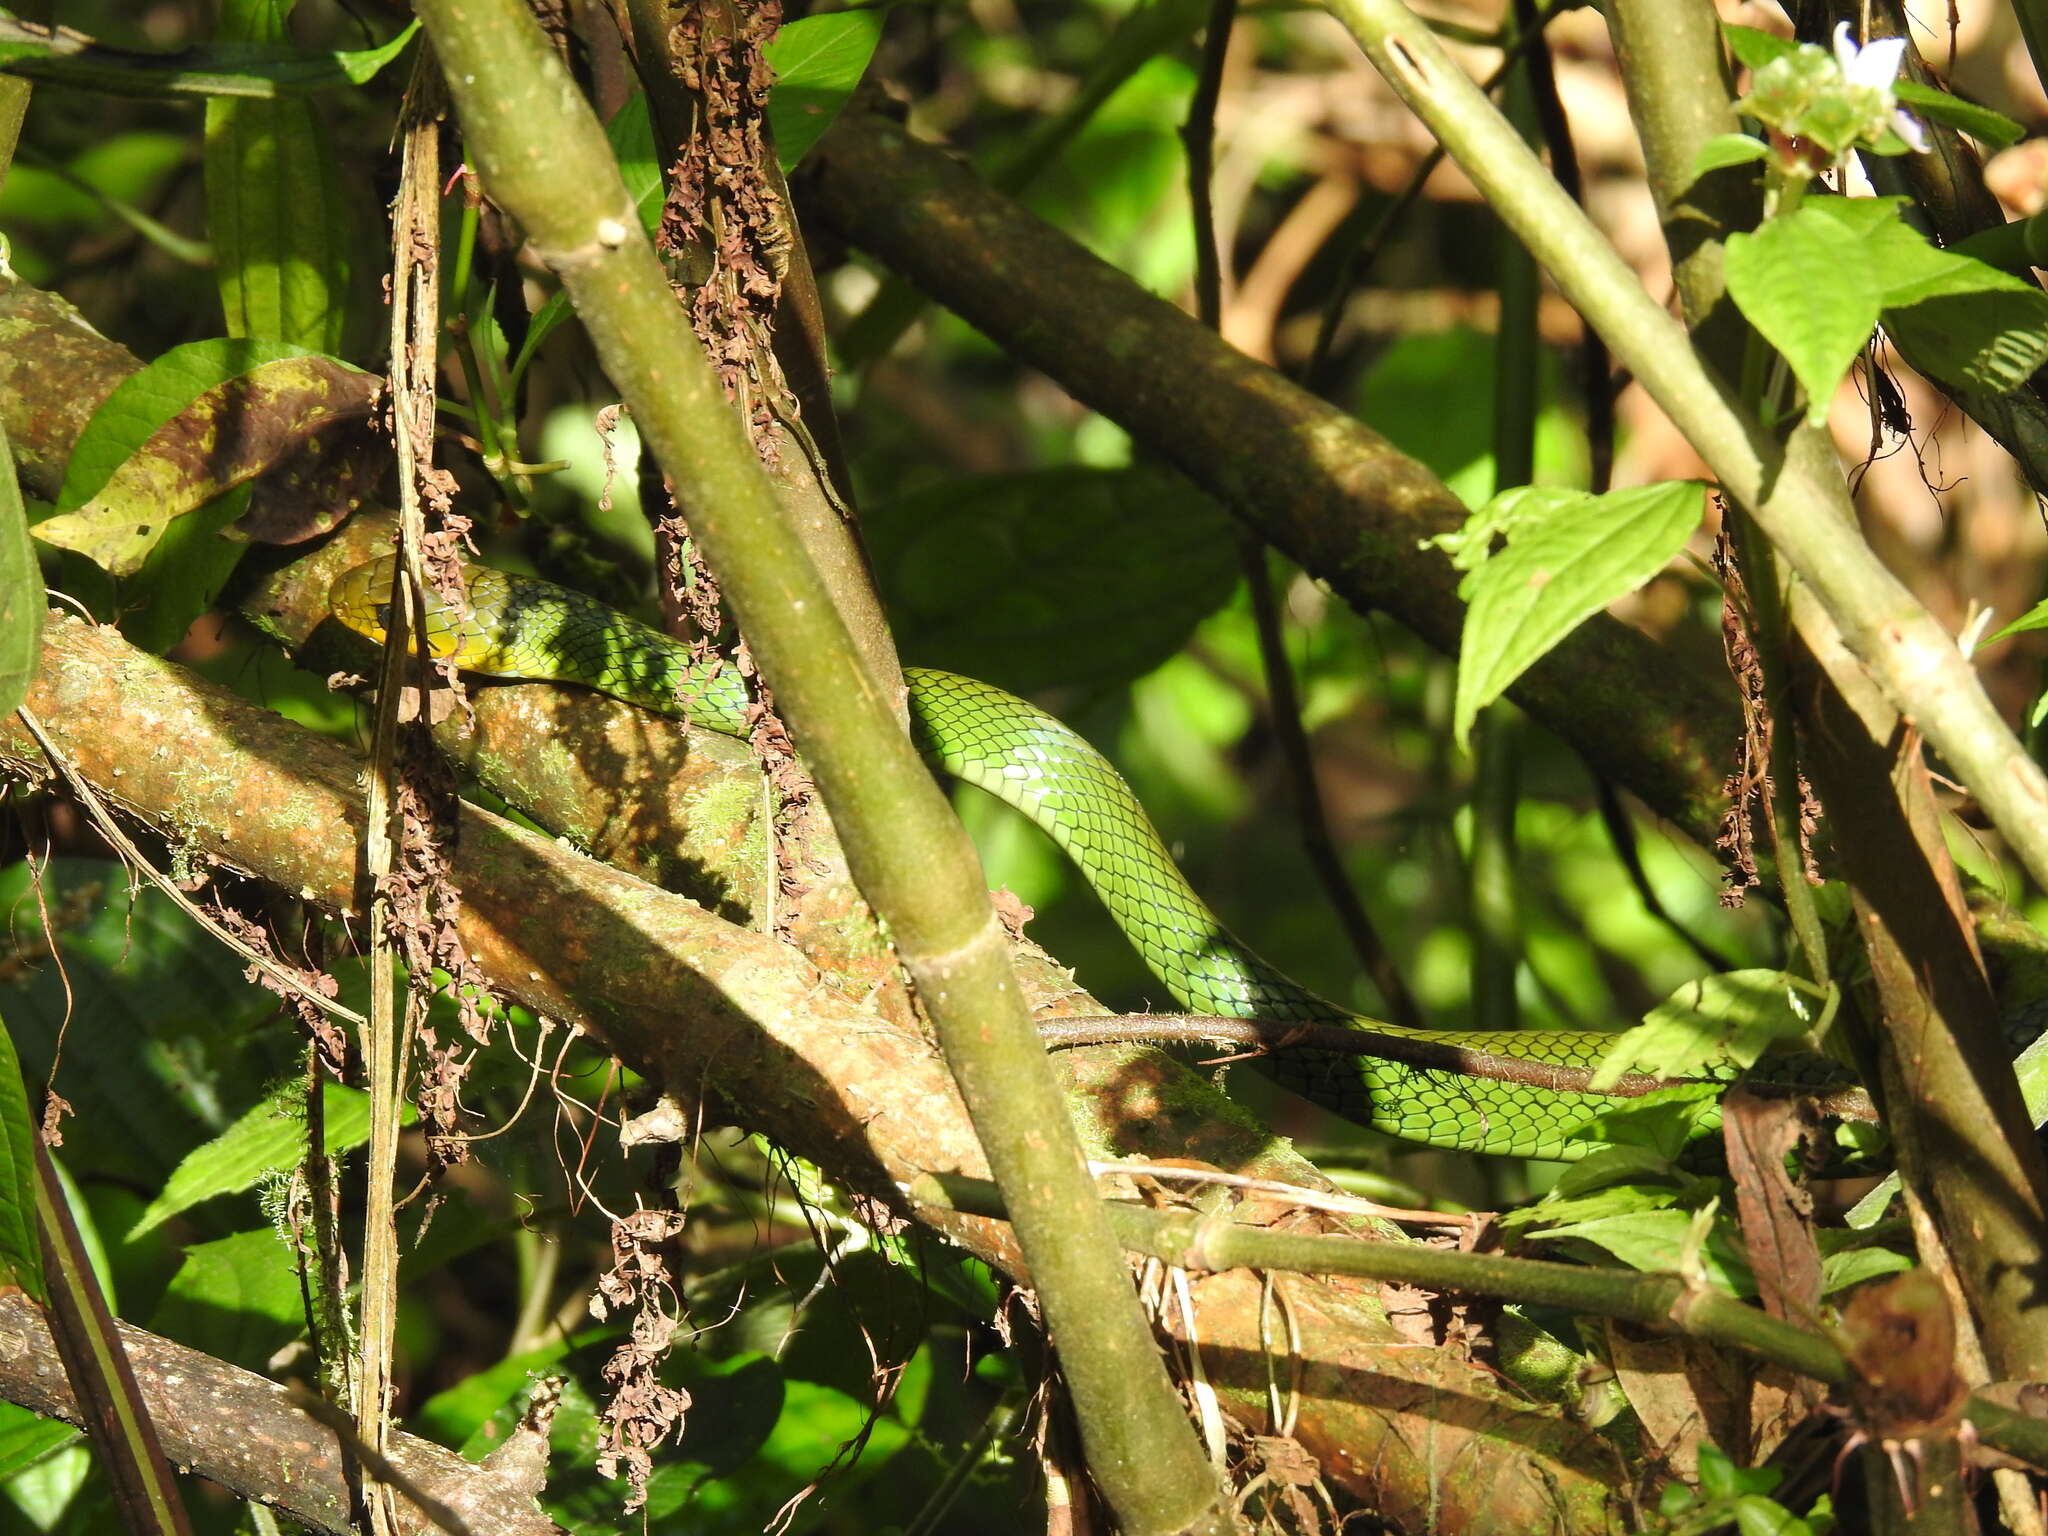 Image of Green Rat Snake